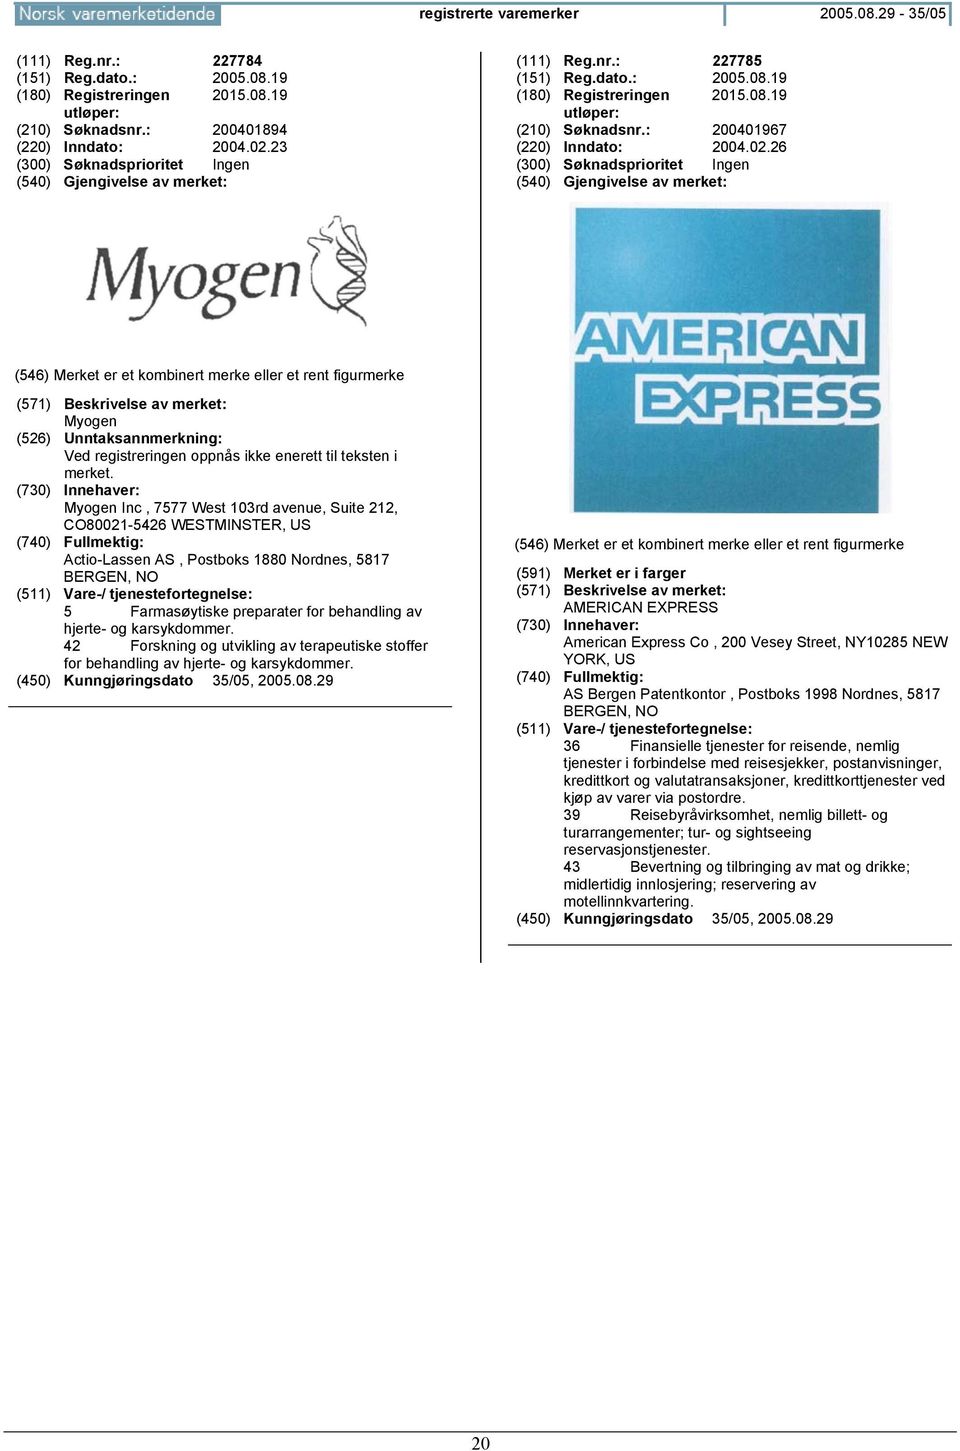 Myogen Inc, 7577 West 103rd avenue, Suite 212, CO80021-5426 WESTMINSTER, US Actio-Lassen AS, Postboks 1880 Nordnes, 5817 BERGEN, 5 Farmasøytiske preparater for behandling av hjerte- og karsykdommer.